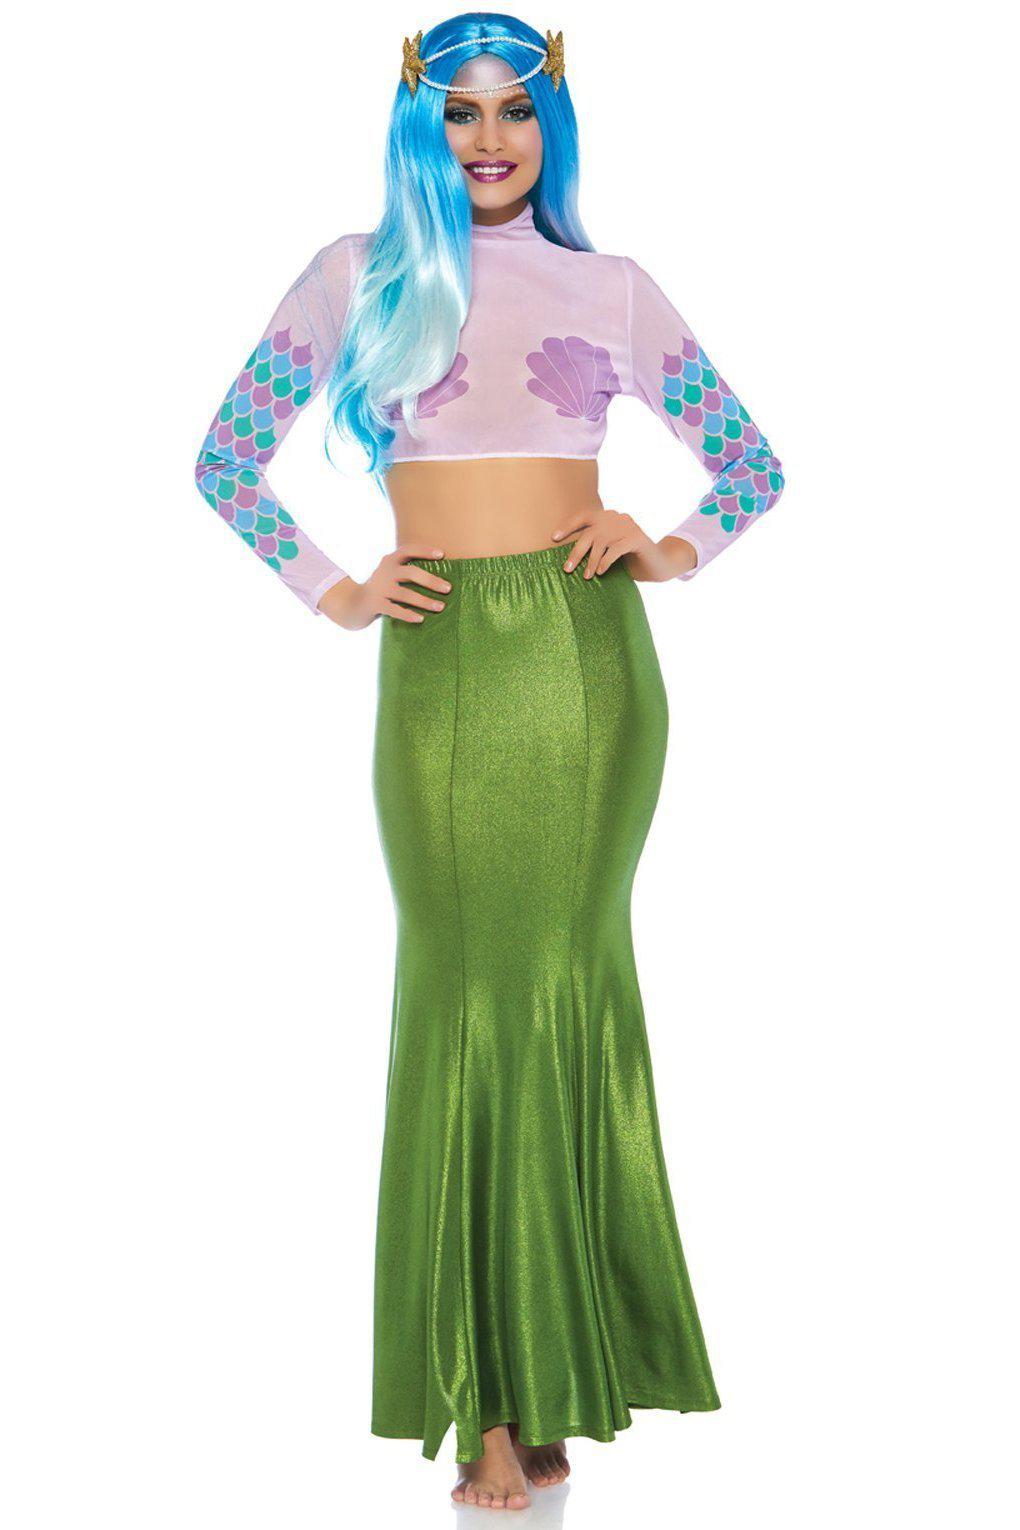 Shimmer Spandex Mermaid Skirt-Mermaid Costumes-Leg Avenue-SEXYSHOES.COM